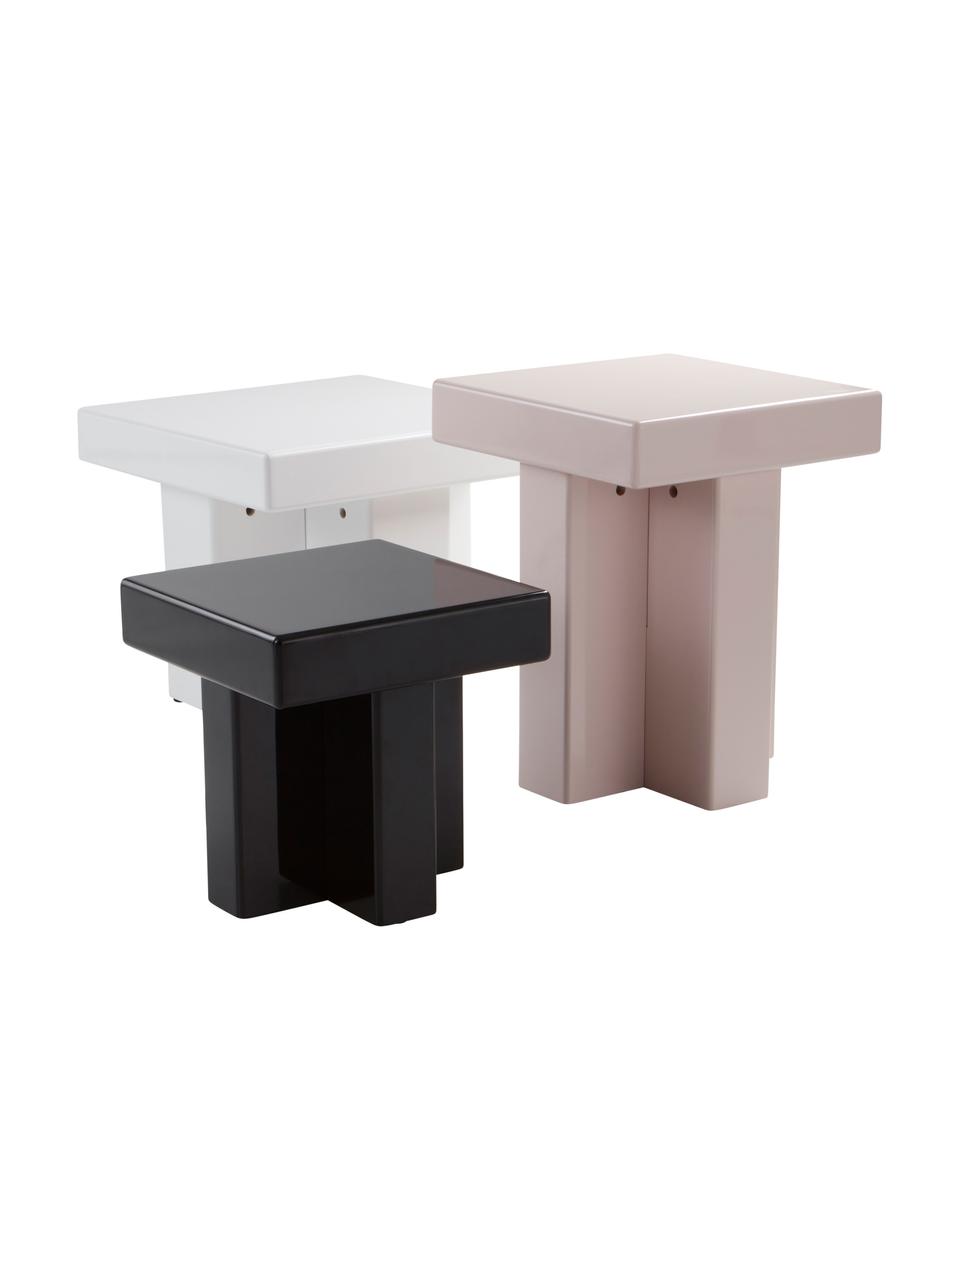 Odkládací stolek Crozz, Lakovaná MDF deska (dřevovláknitá deska střední hustoty), Dřevo, lakováno černou barvou, Š 35 cm, V 43 cm